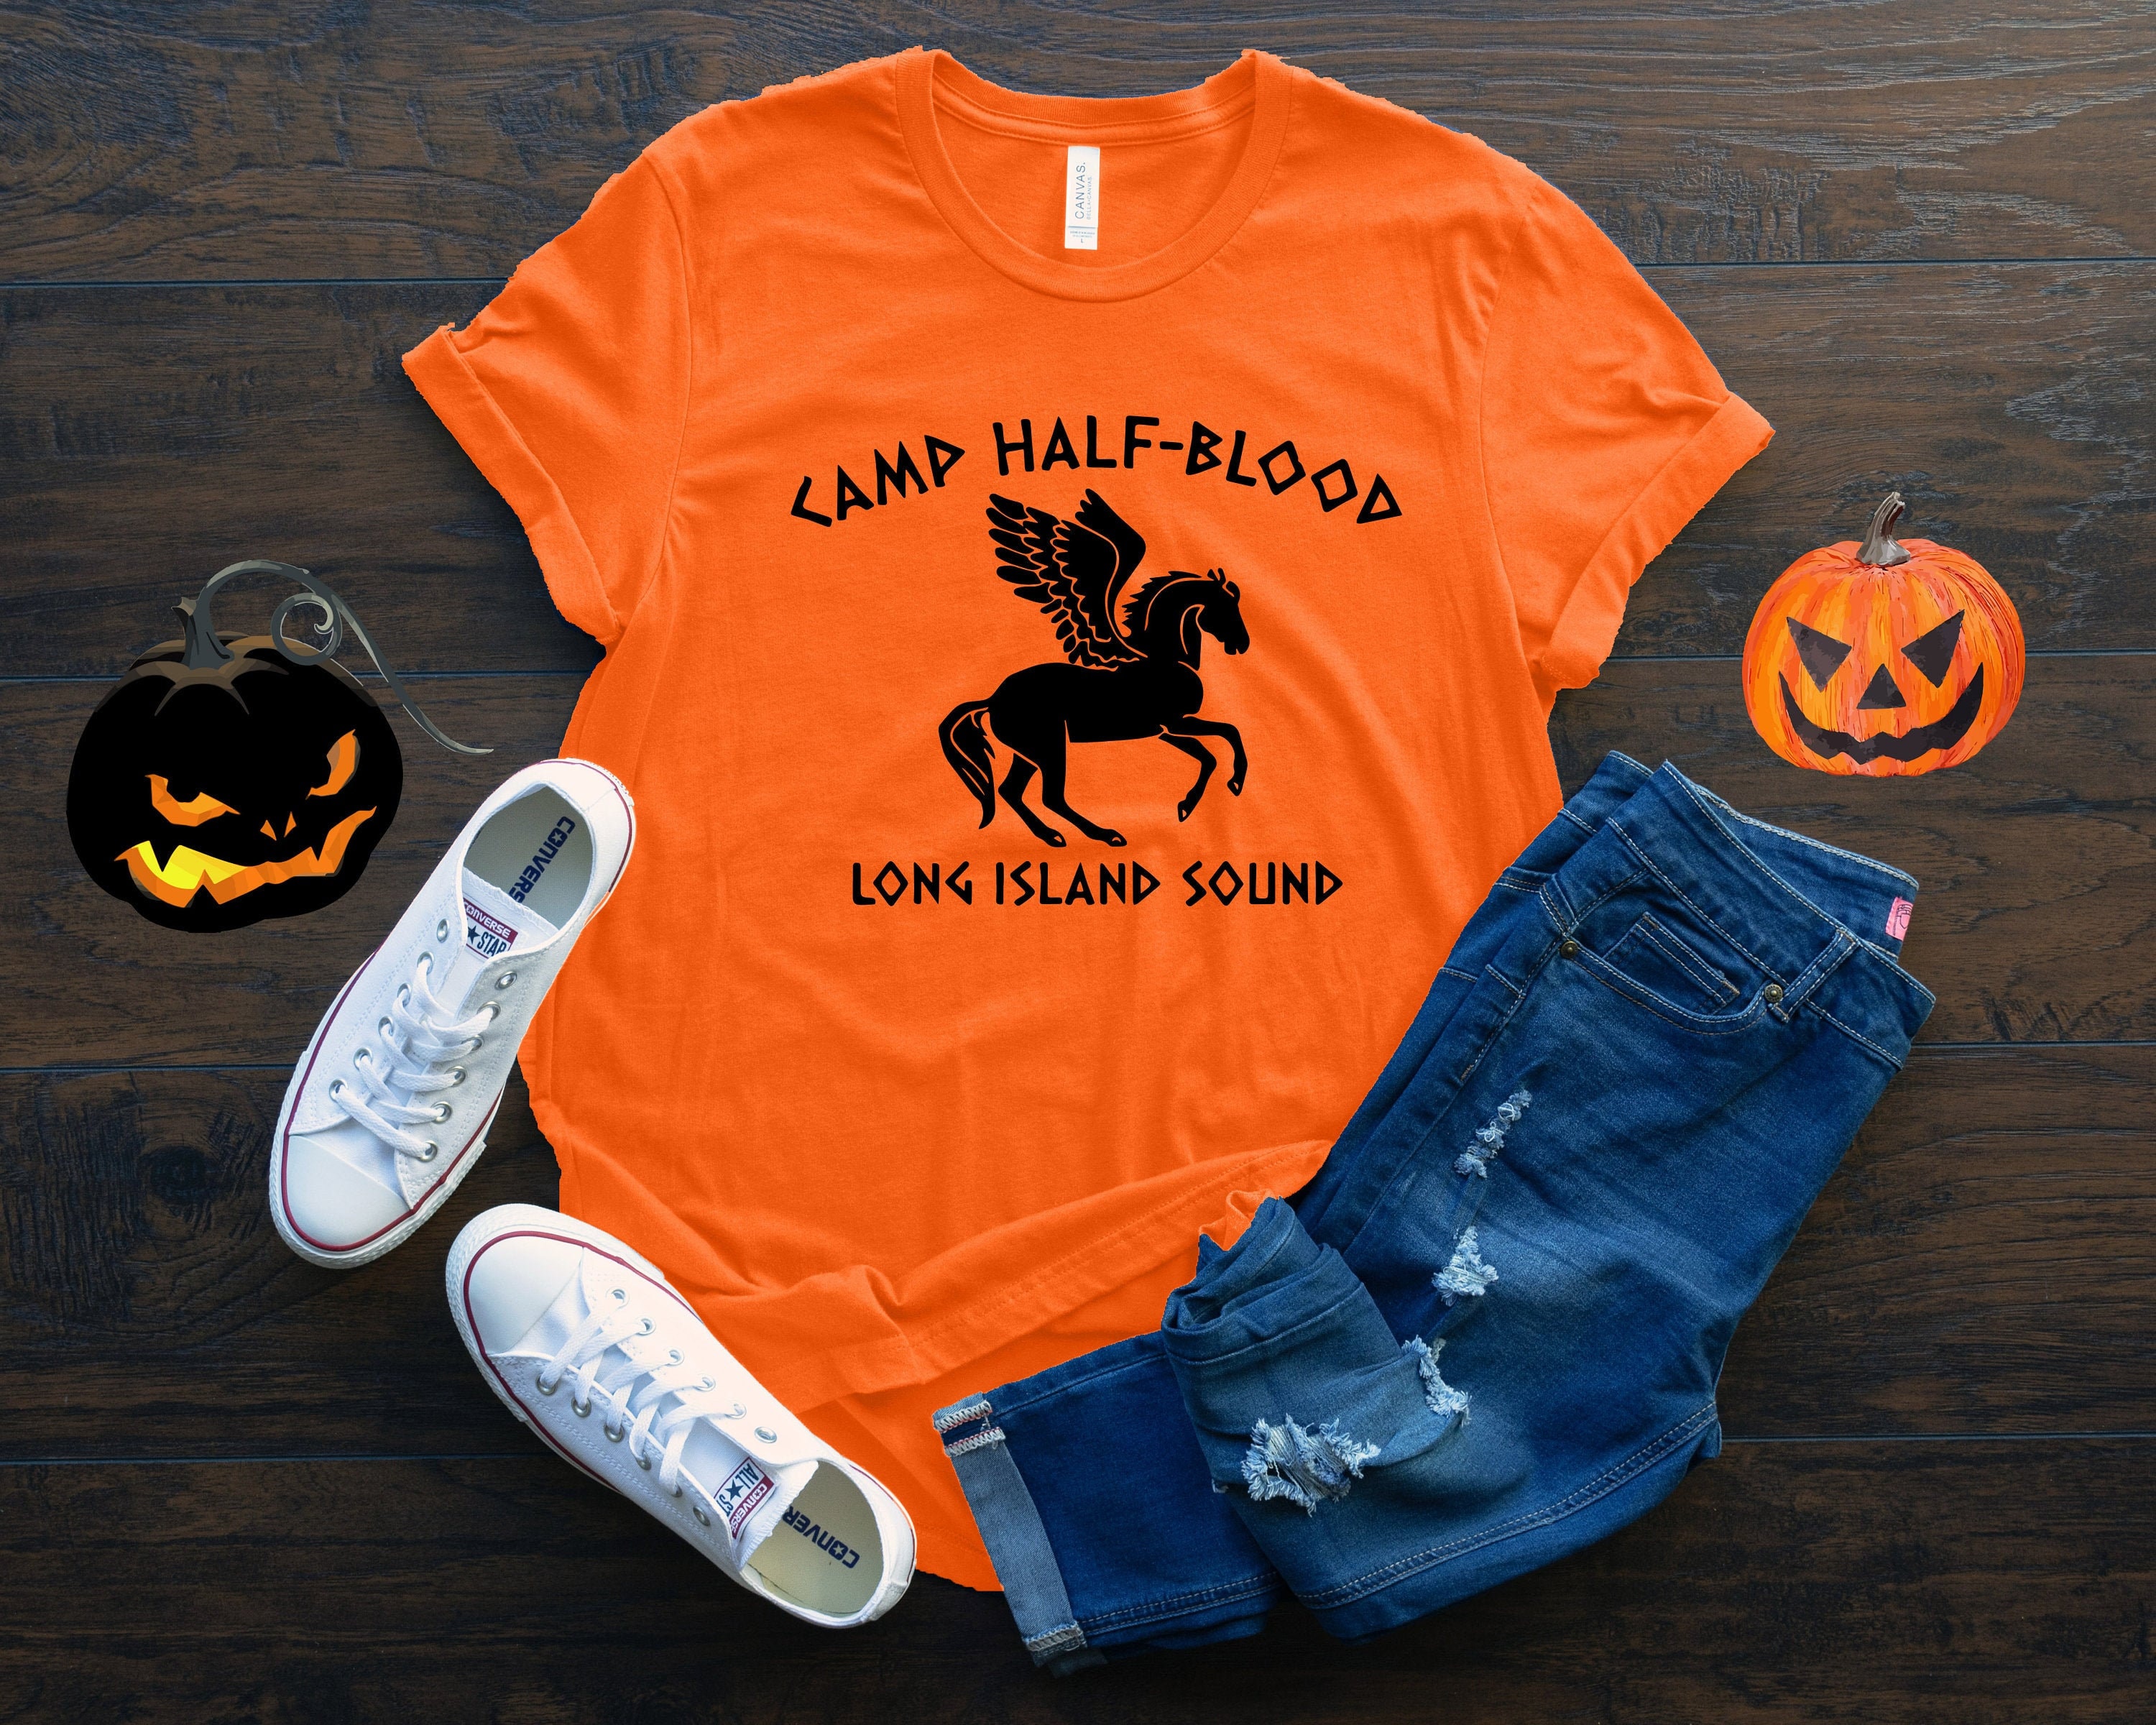  ALLNTRENDS Hombre Camiseta Camp Half Blood, naranja/fiesta de  bloques, S : Ropa, Zapatos y Joyería